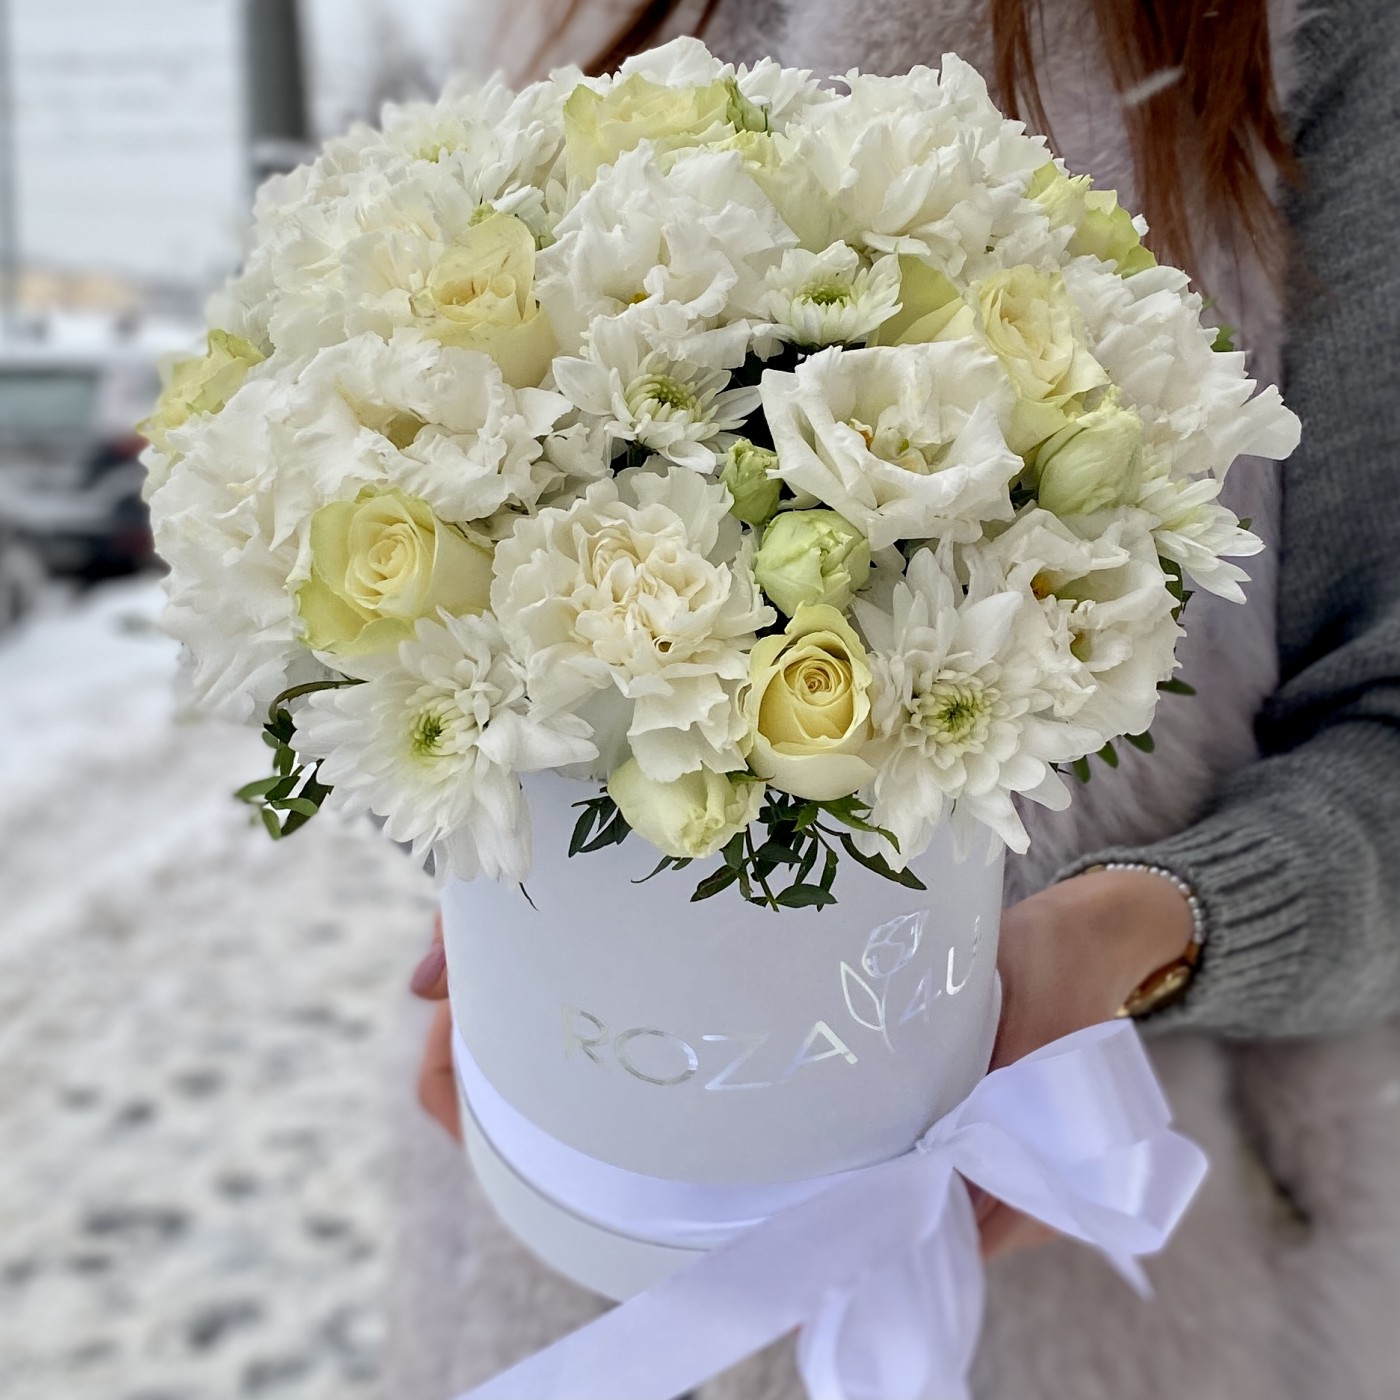 Роскошный букет белых цветов с гвоздиками на День Восьмого Марта